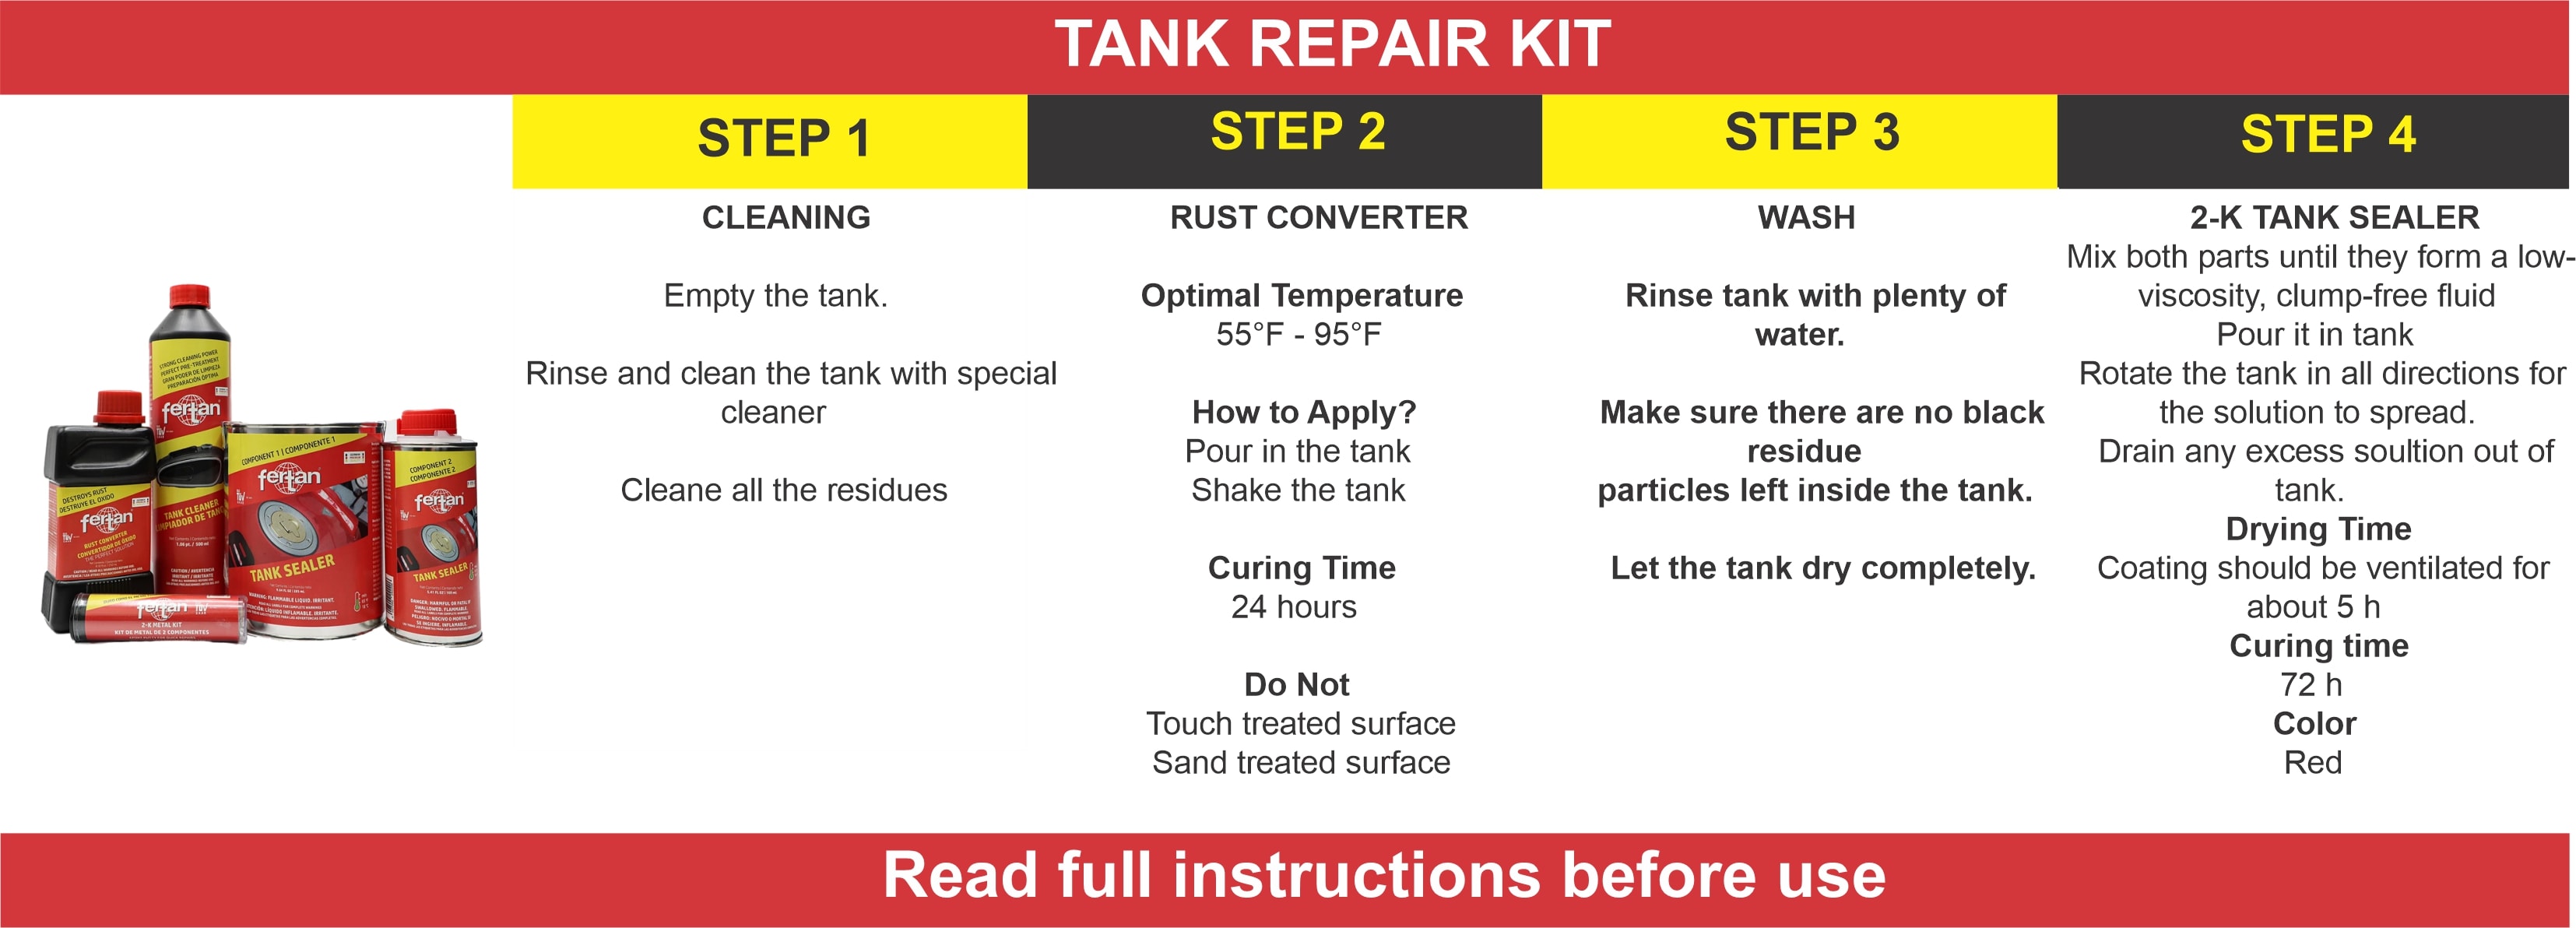 Tank repair kit